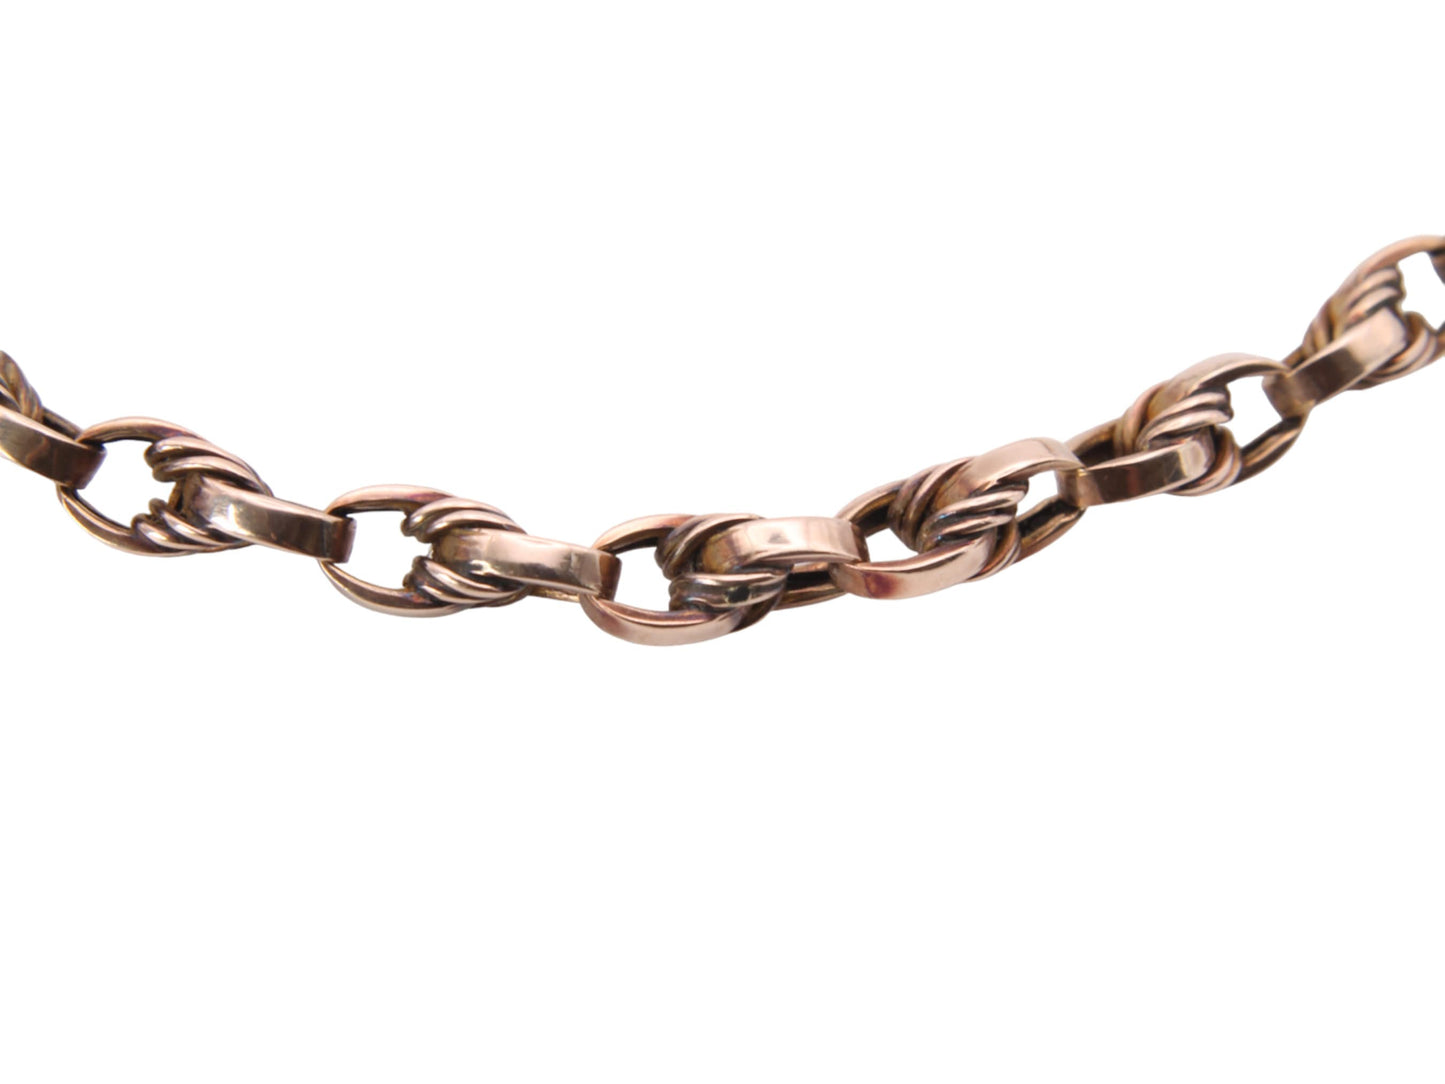 Antique 9ct Gold Lovers Knot Link Bracelet